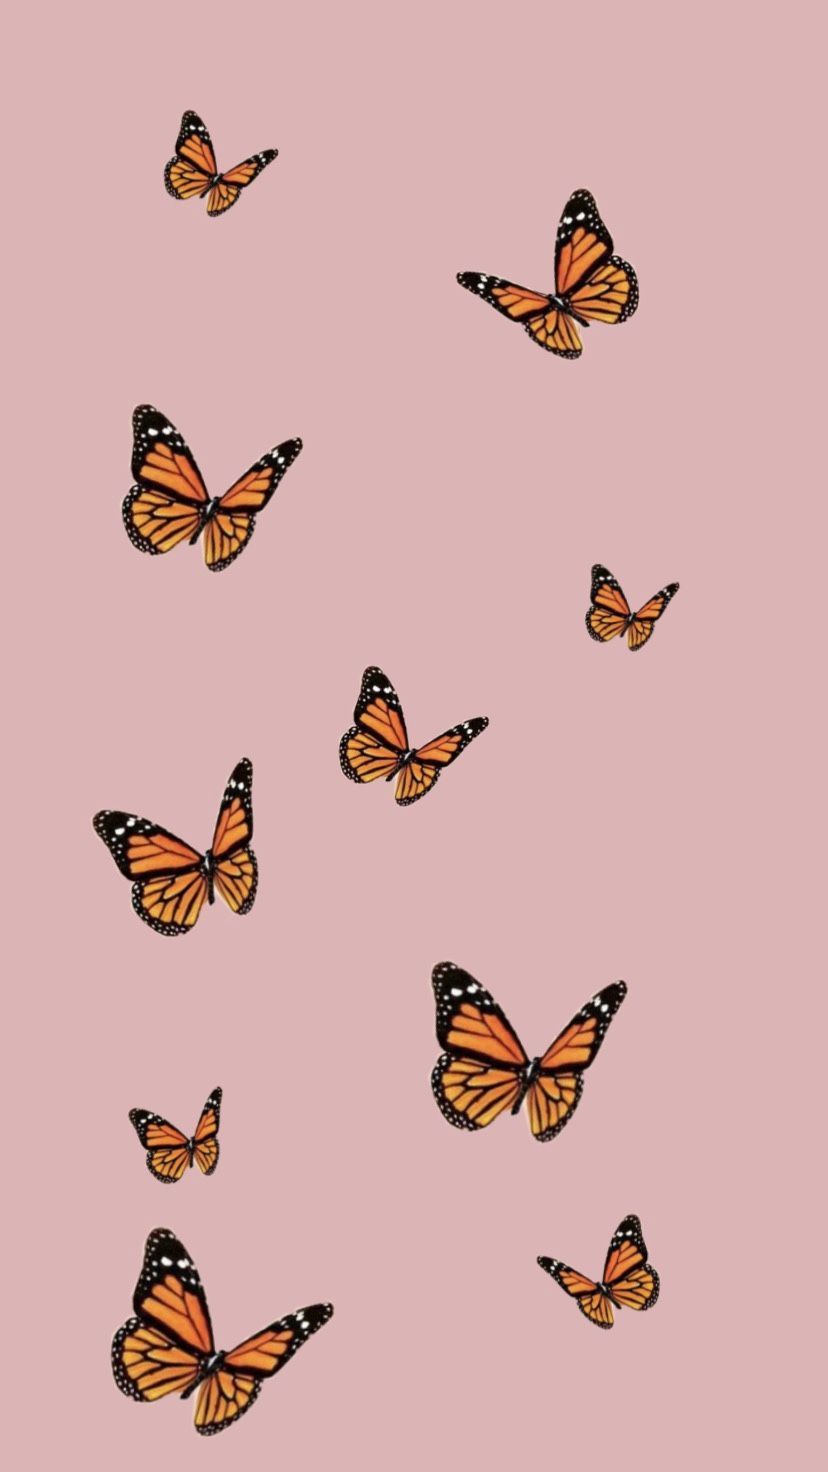 butterfly wallpaper. Stunning wallpaper, Aesthetic iphone wallpaper, iPhone background wallpaper